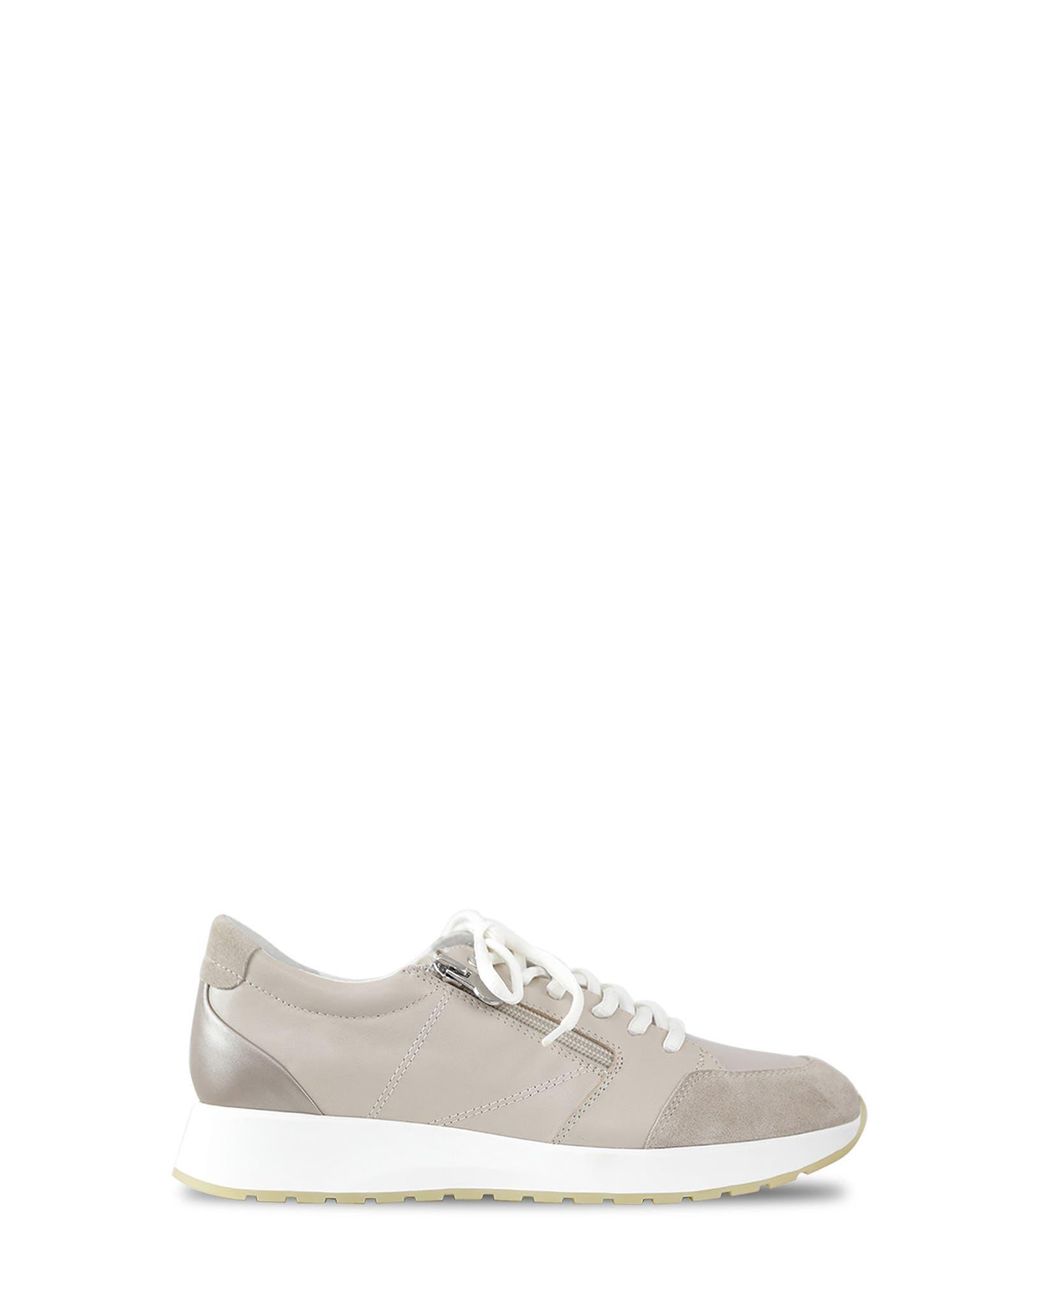 Munro Sutton Sneaker in White | Lyst